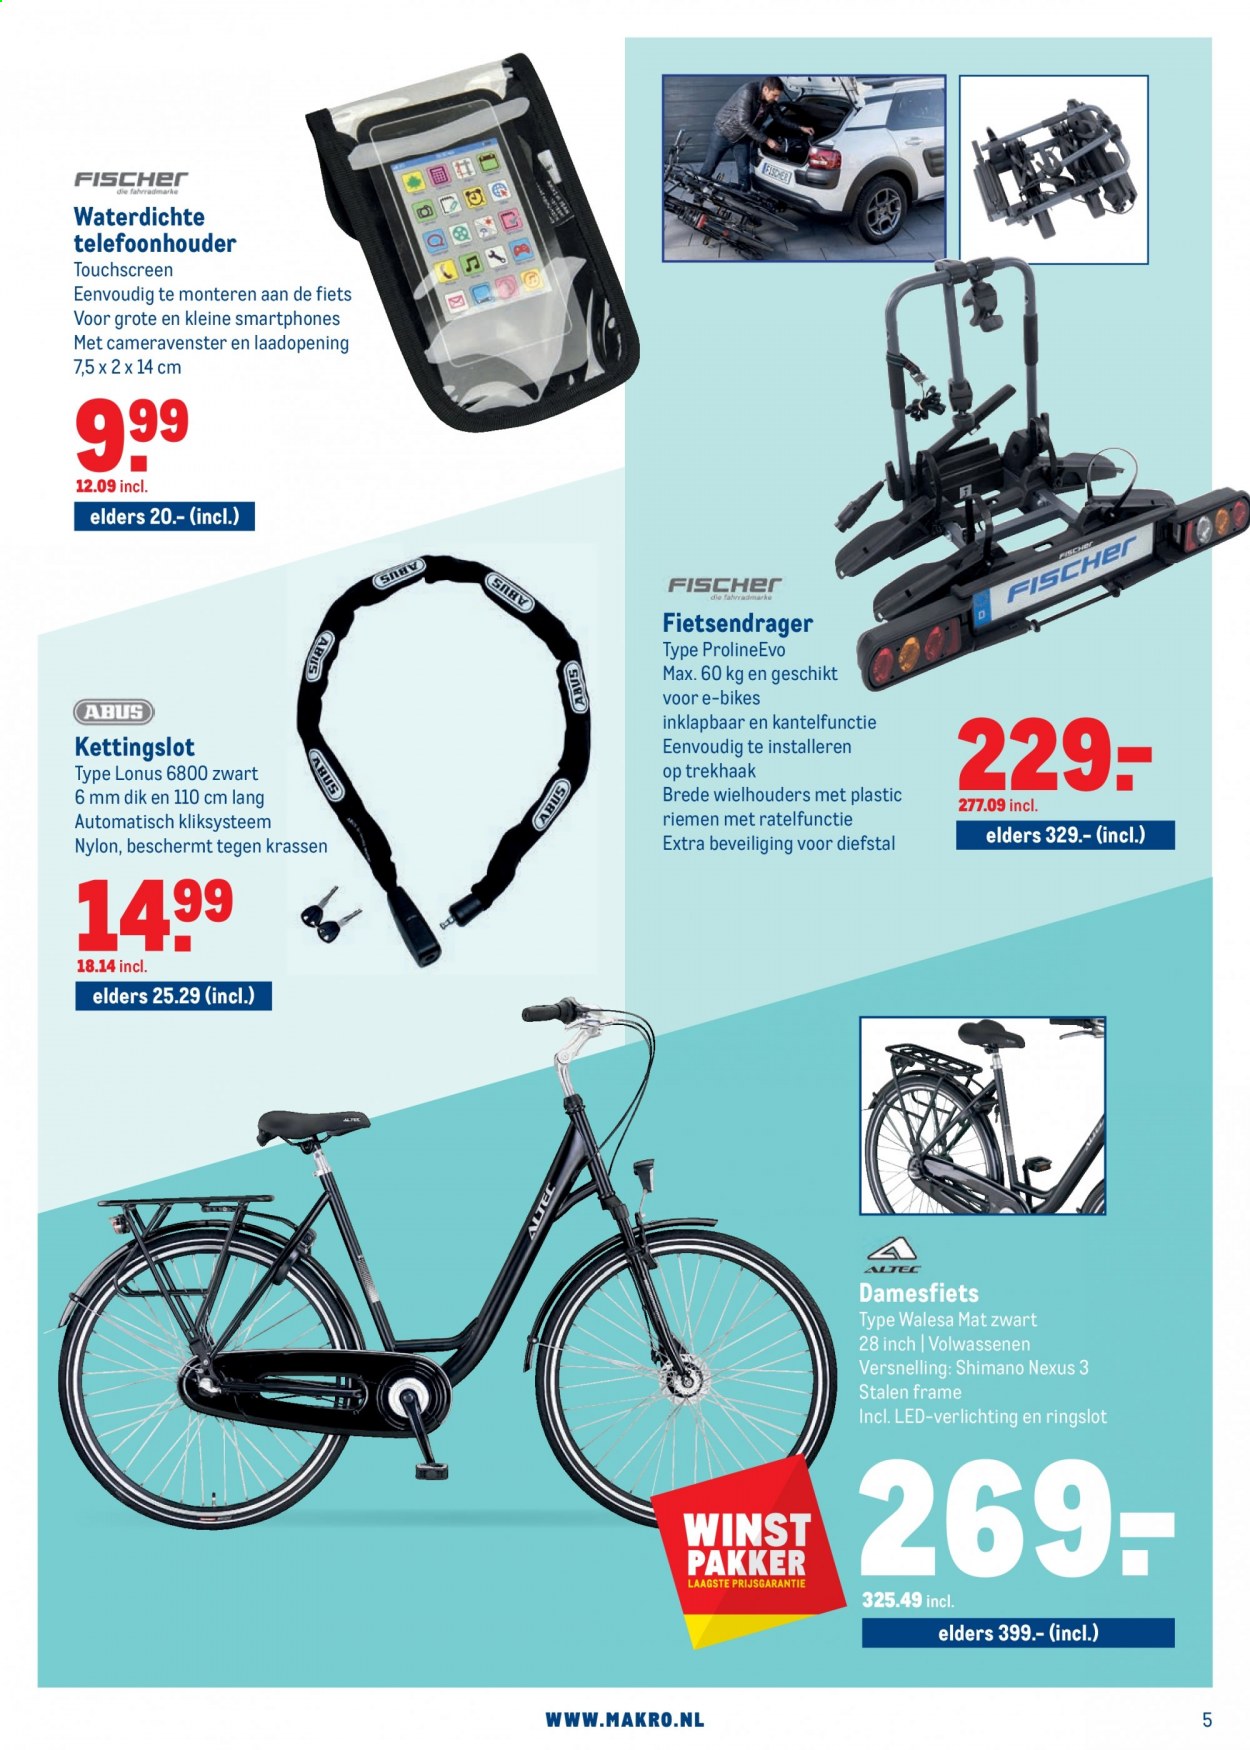 thumbnail - Makro-aanbieding - 31-3-2021 - 13-4-2021 -  producten in de aanbieding - Shimano, fiets, verlichting, mat, fietsendrager. Pagina 5.